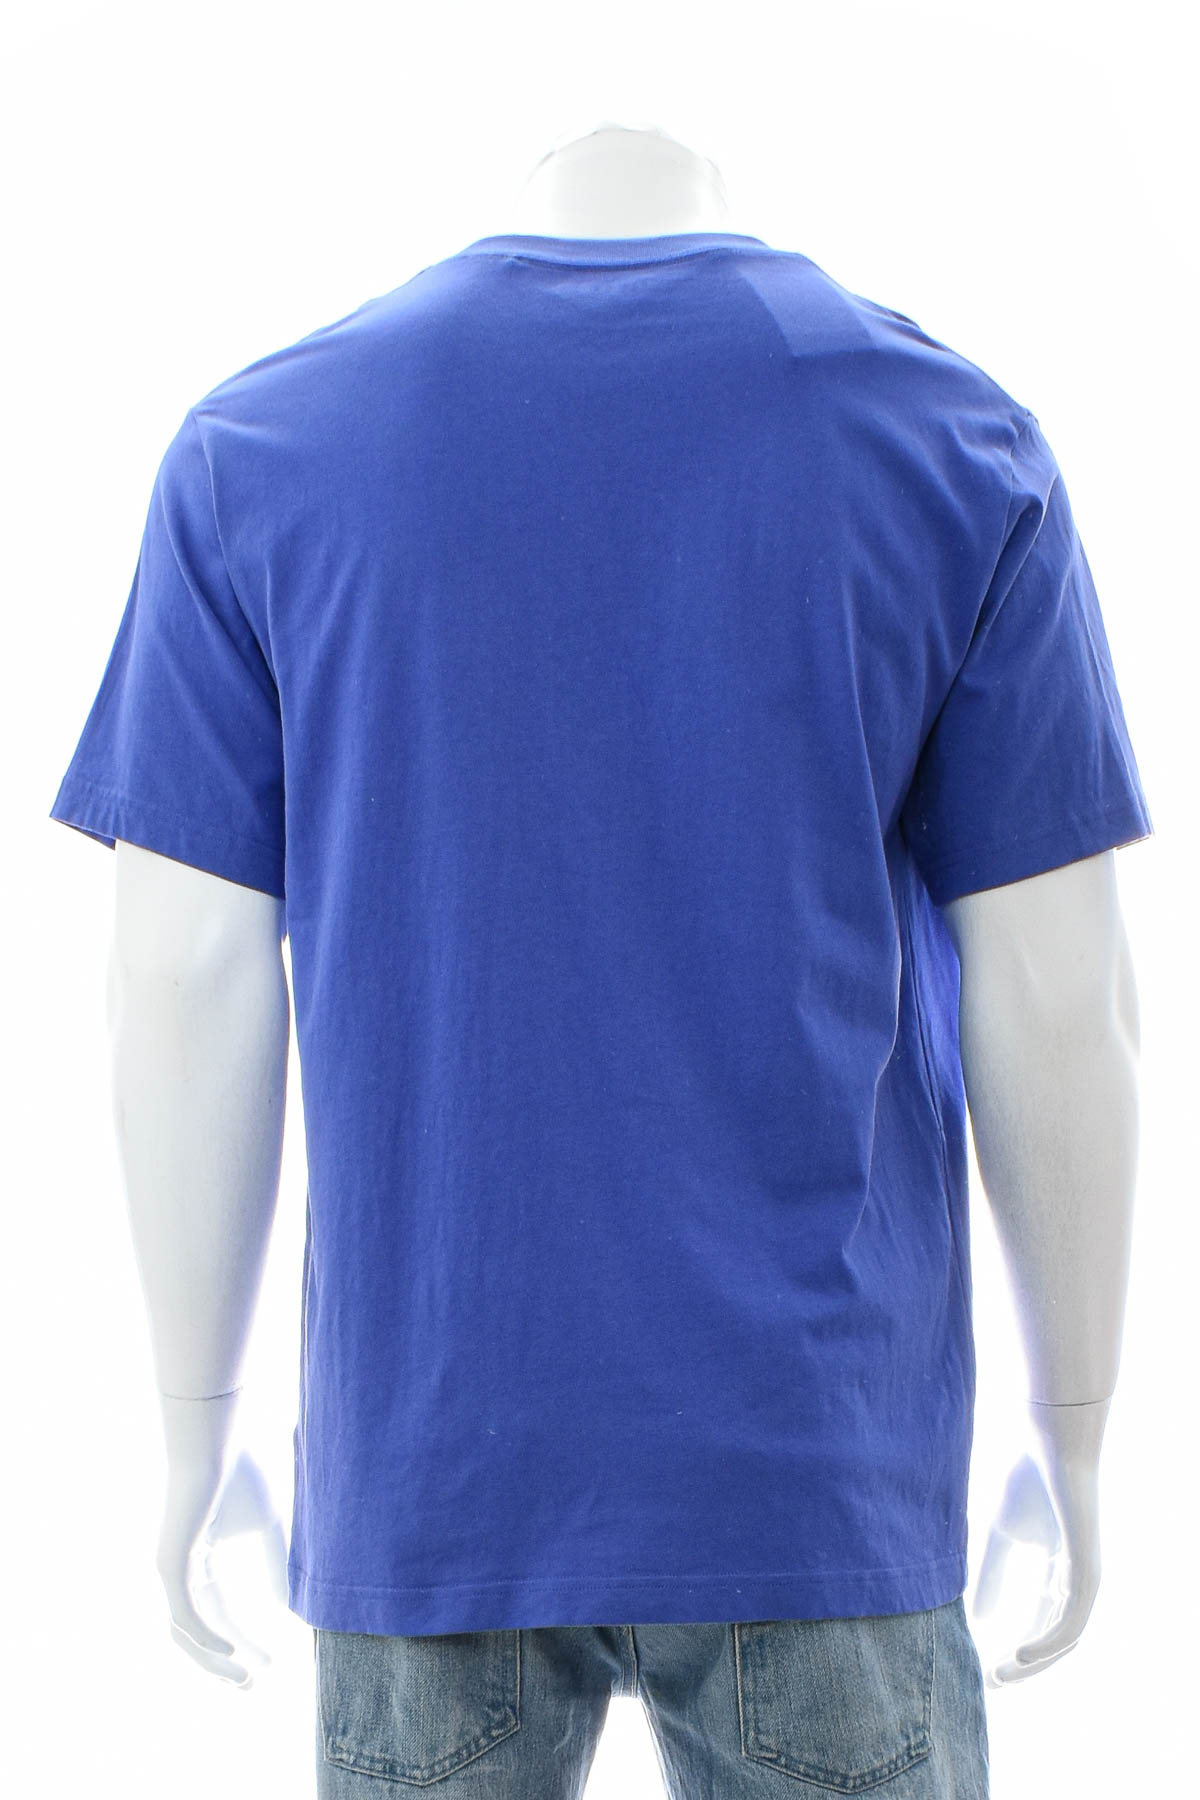 Ανδρικό μπλουζάκι - UNIQLO - 1